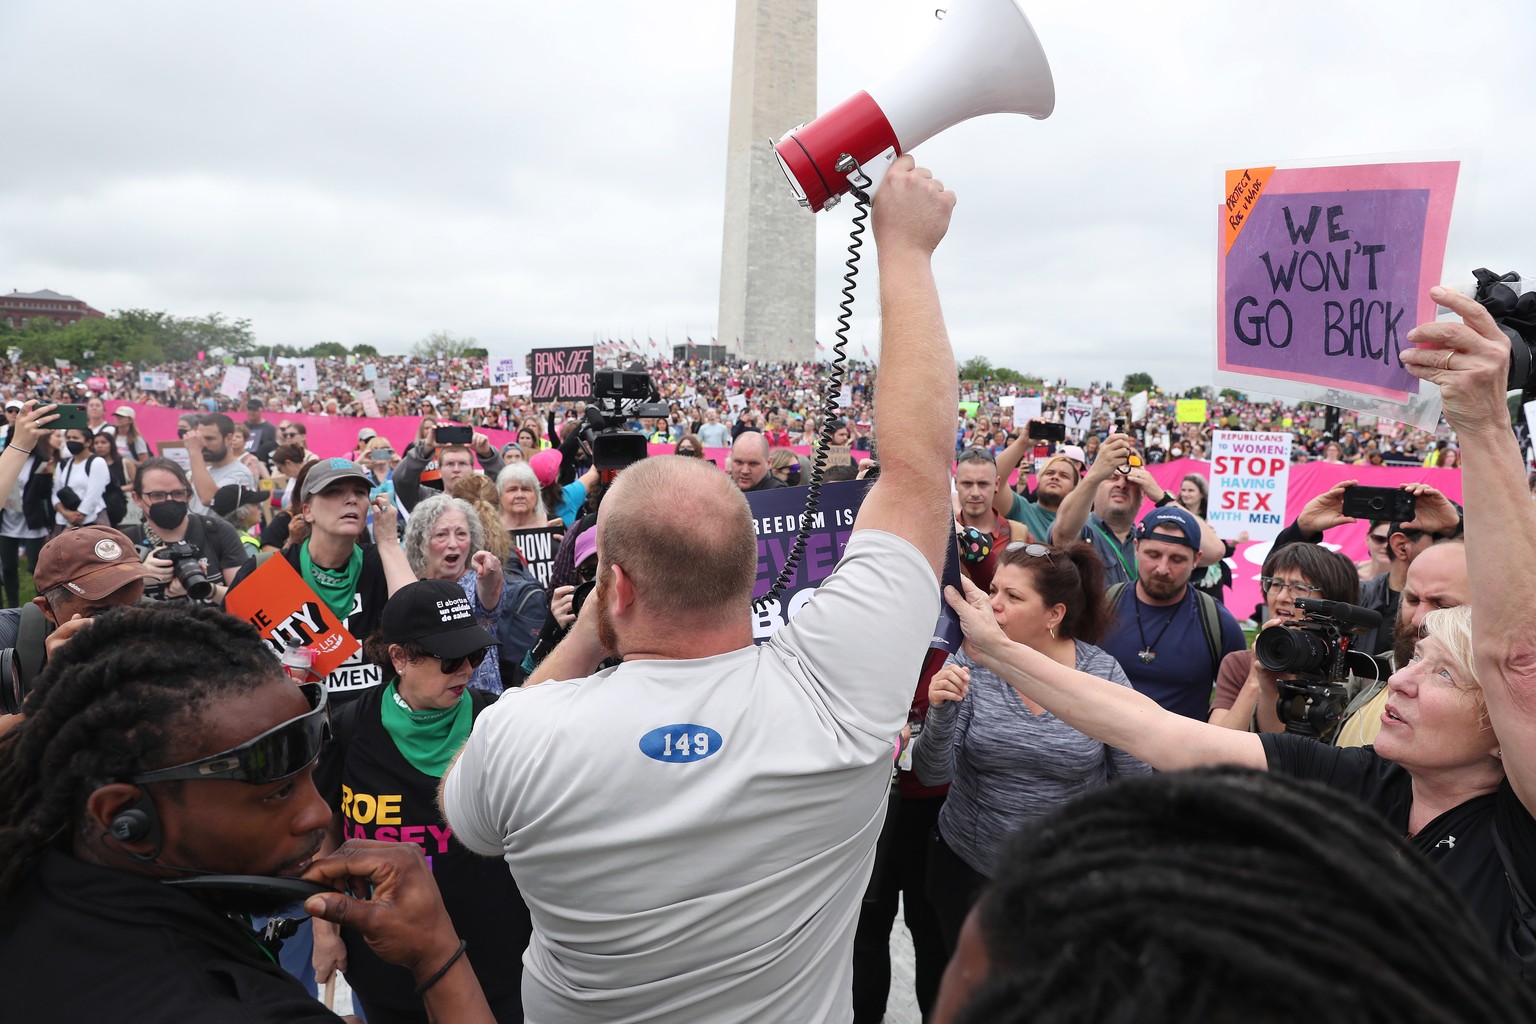 Ein Anti-Abtreibungs-Aktivist (mit Megaphon) stellt sich in Washington D.C. den Kundgebungsteilnehmern entgegen, die für das Recht auf Abtreibung demonstrieren.